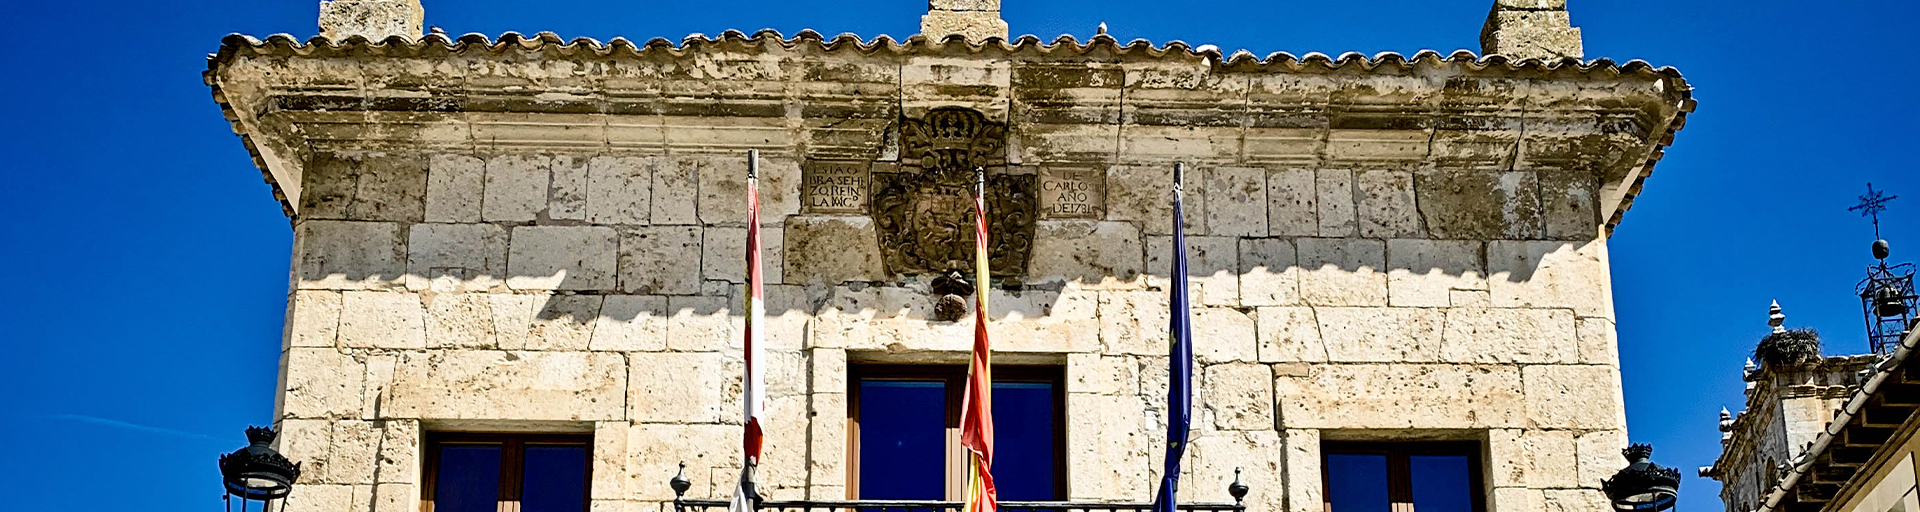 Imagen representativa del municipio